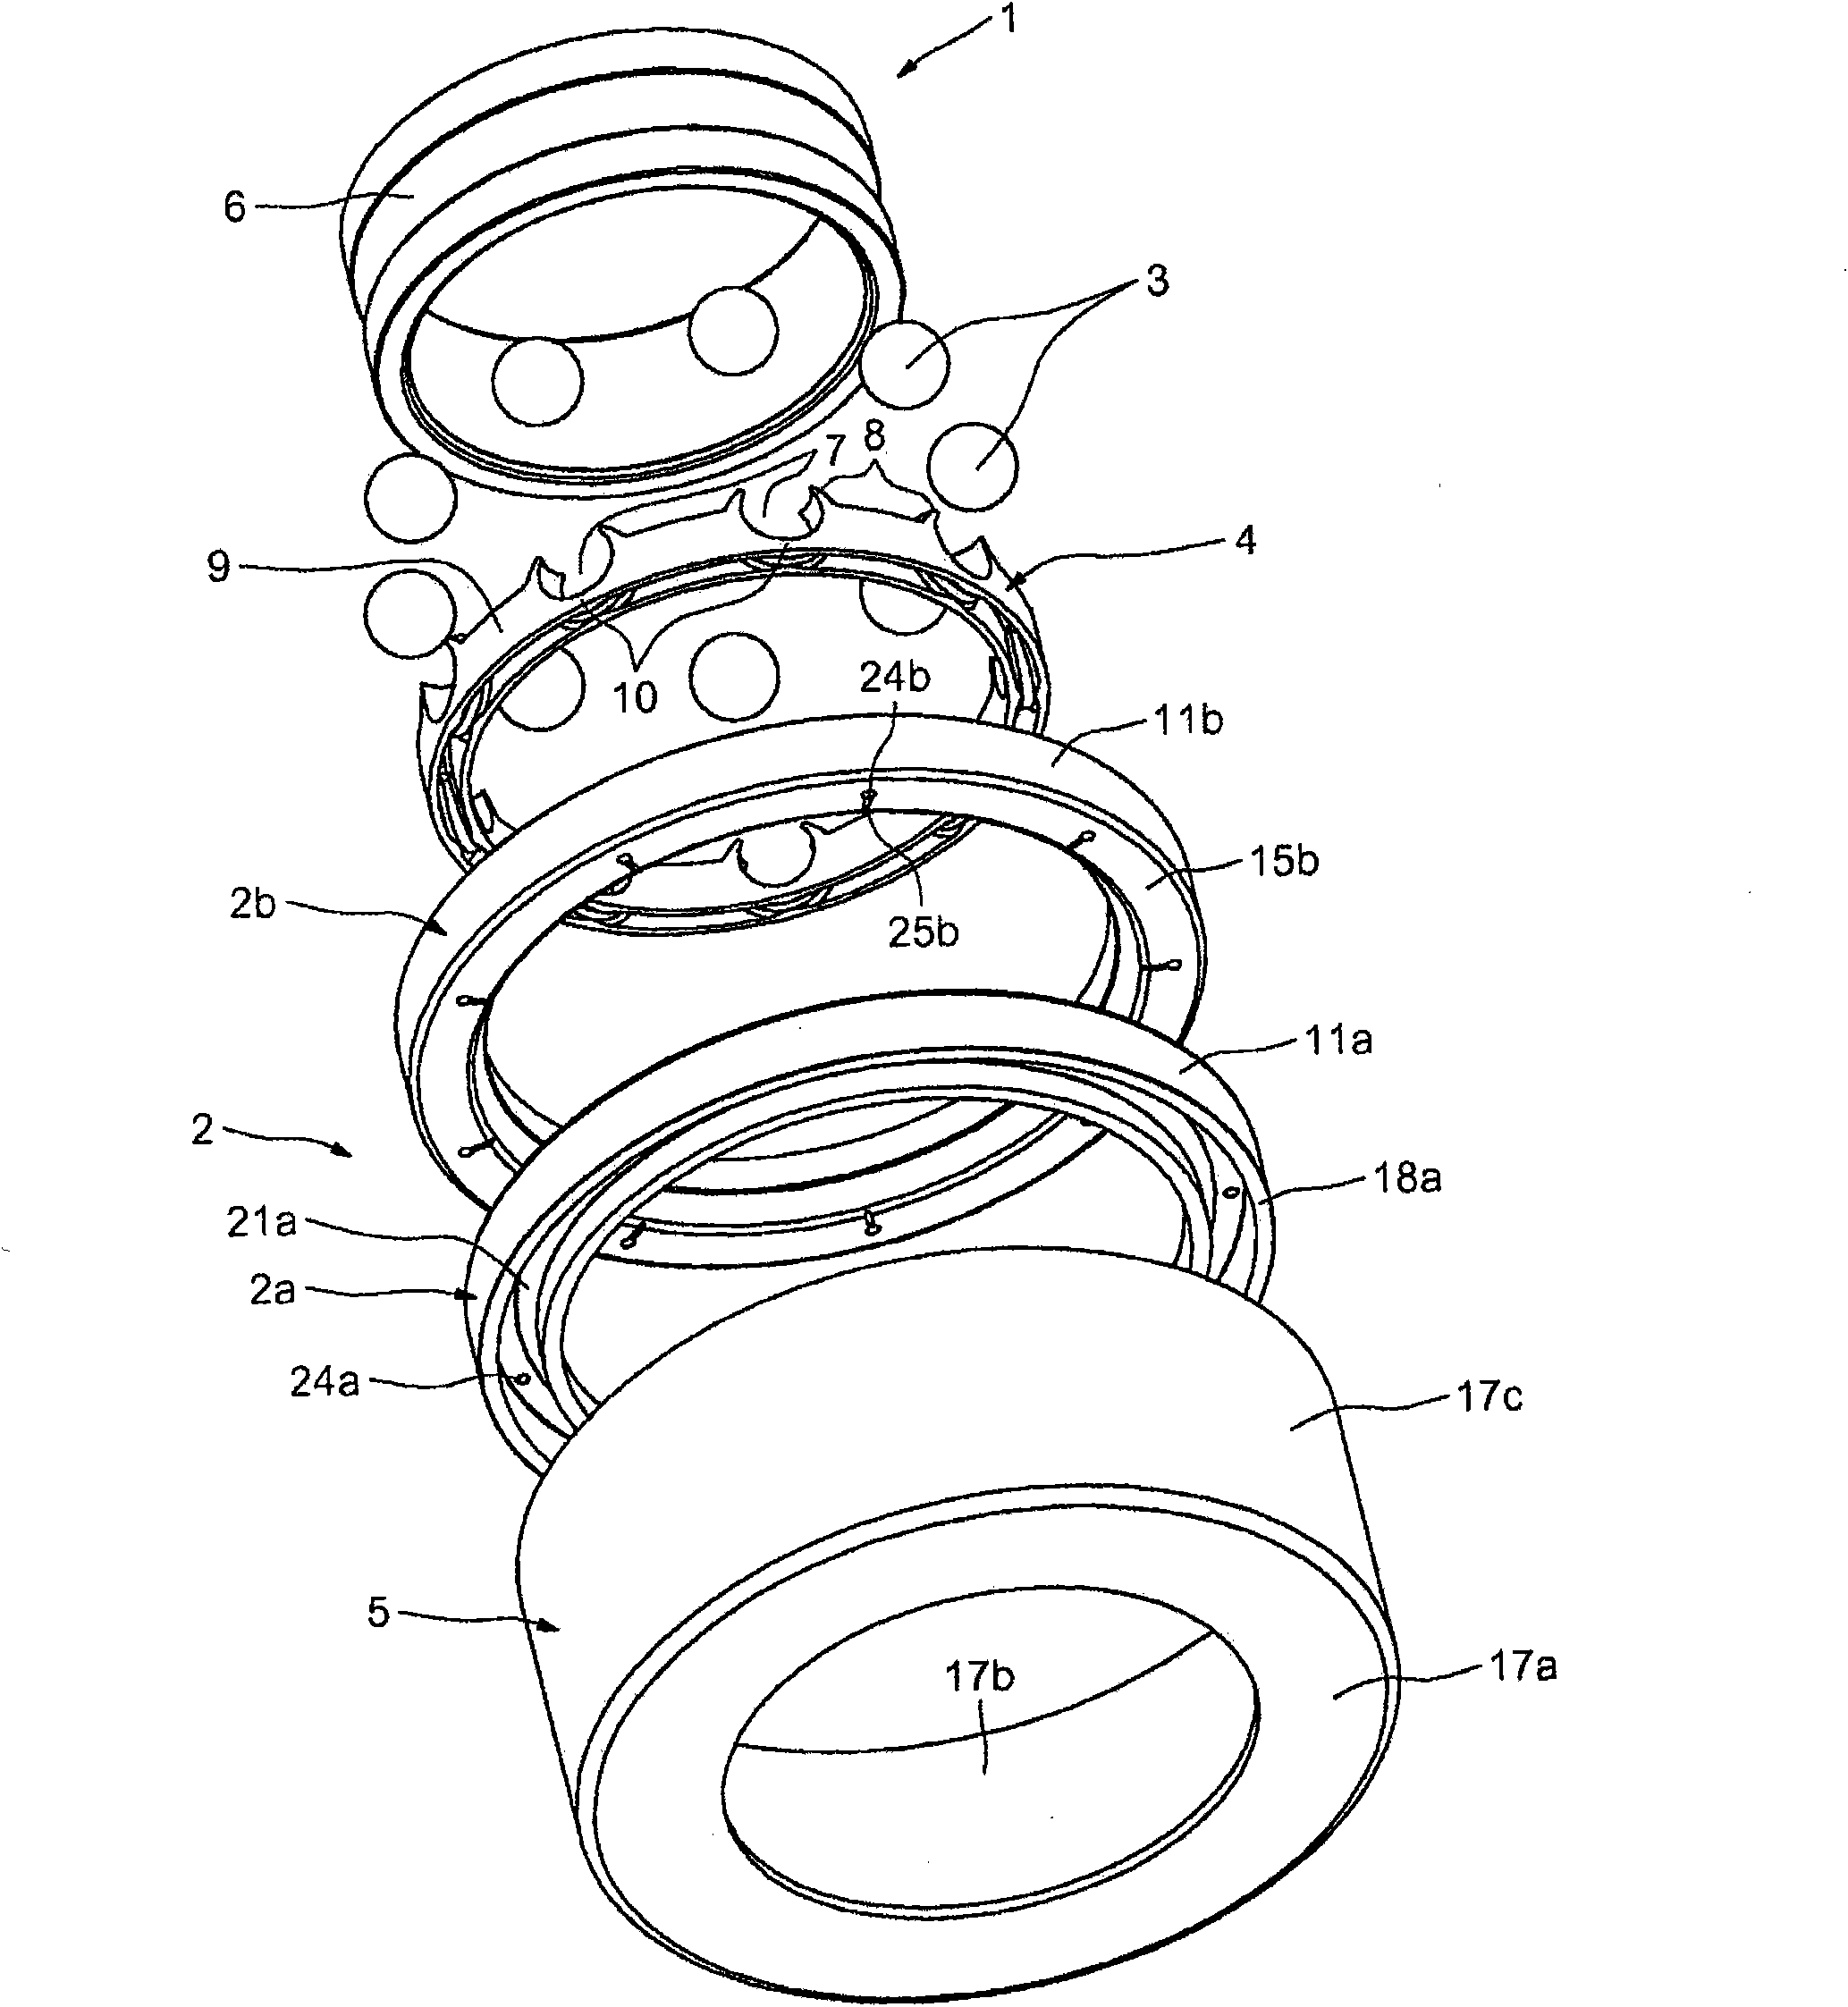 Rolling bearing having internal lubrication